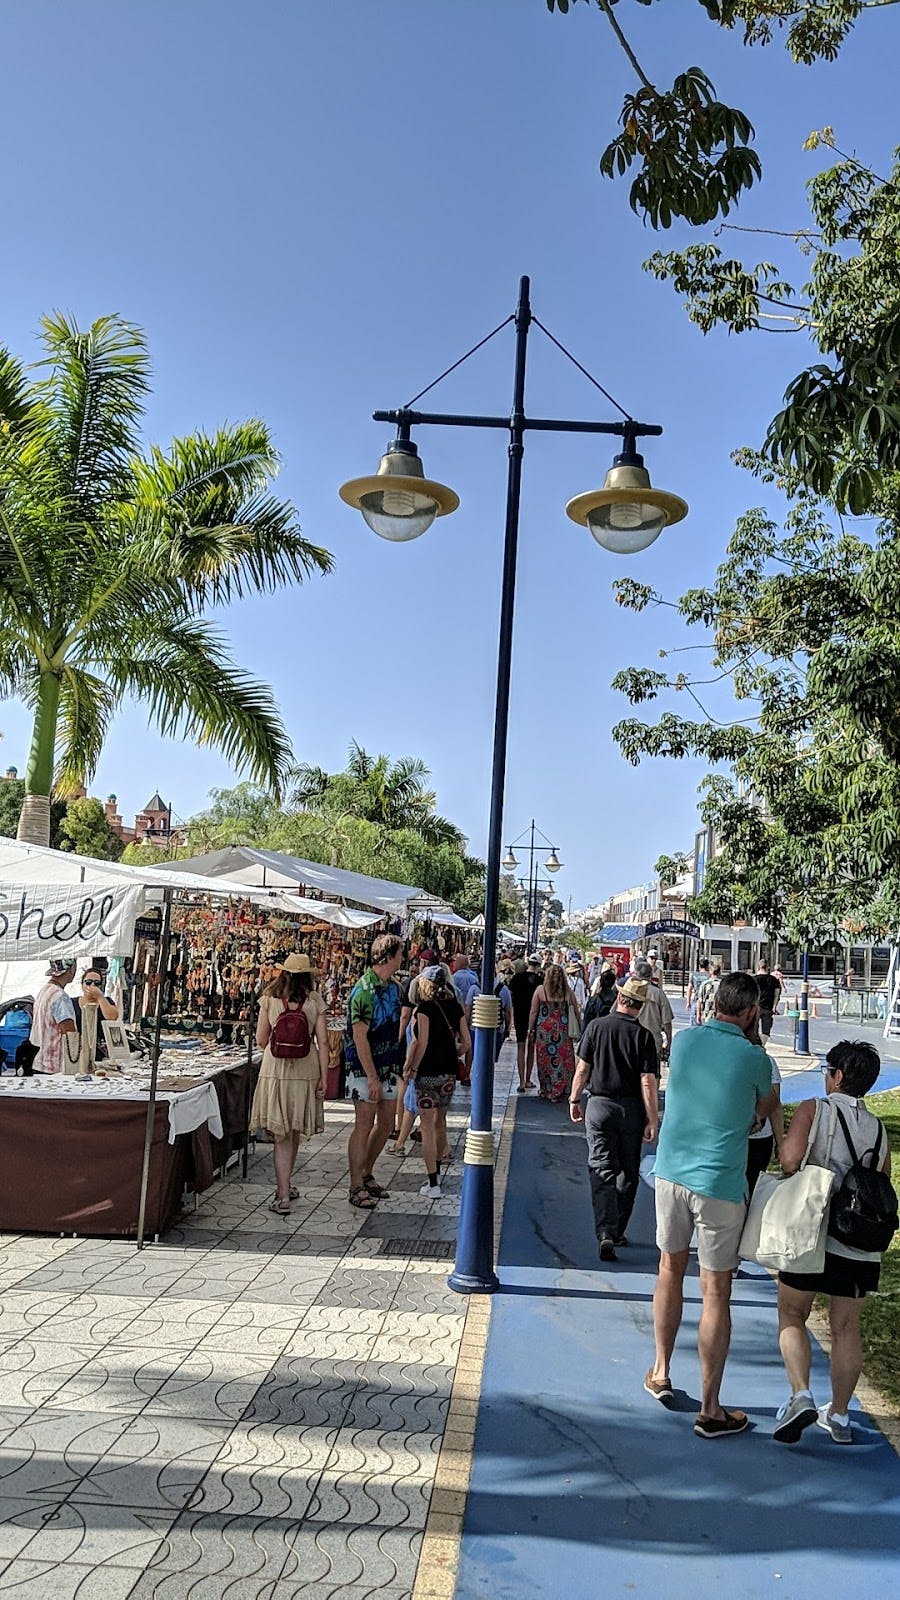 Image - Puerto de Mogan Market